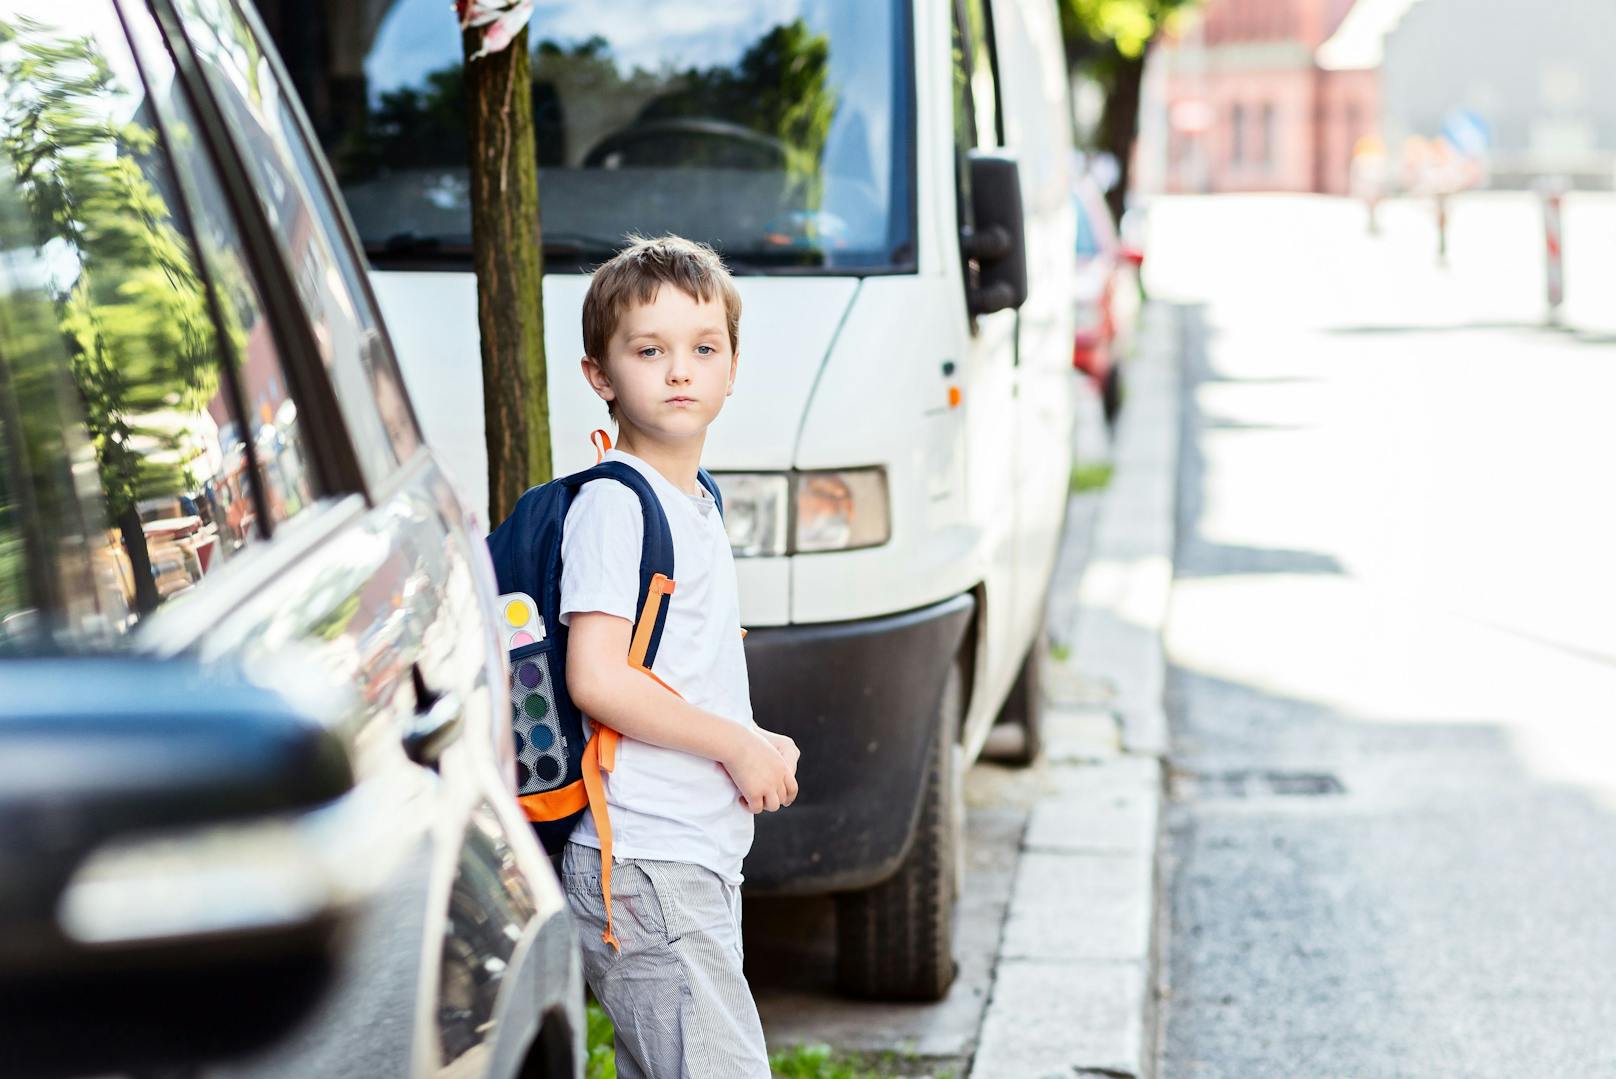 Symbolbild eines Schülers auf dem Weg in die Schule.